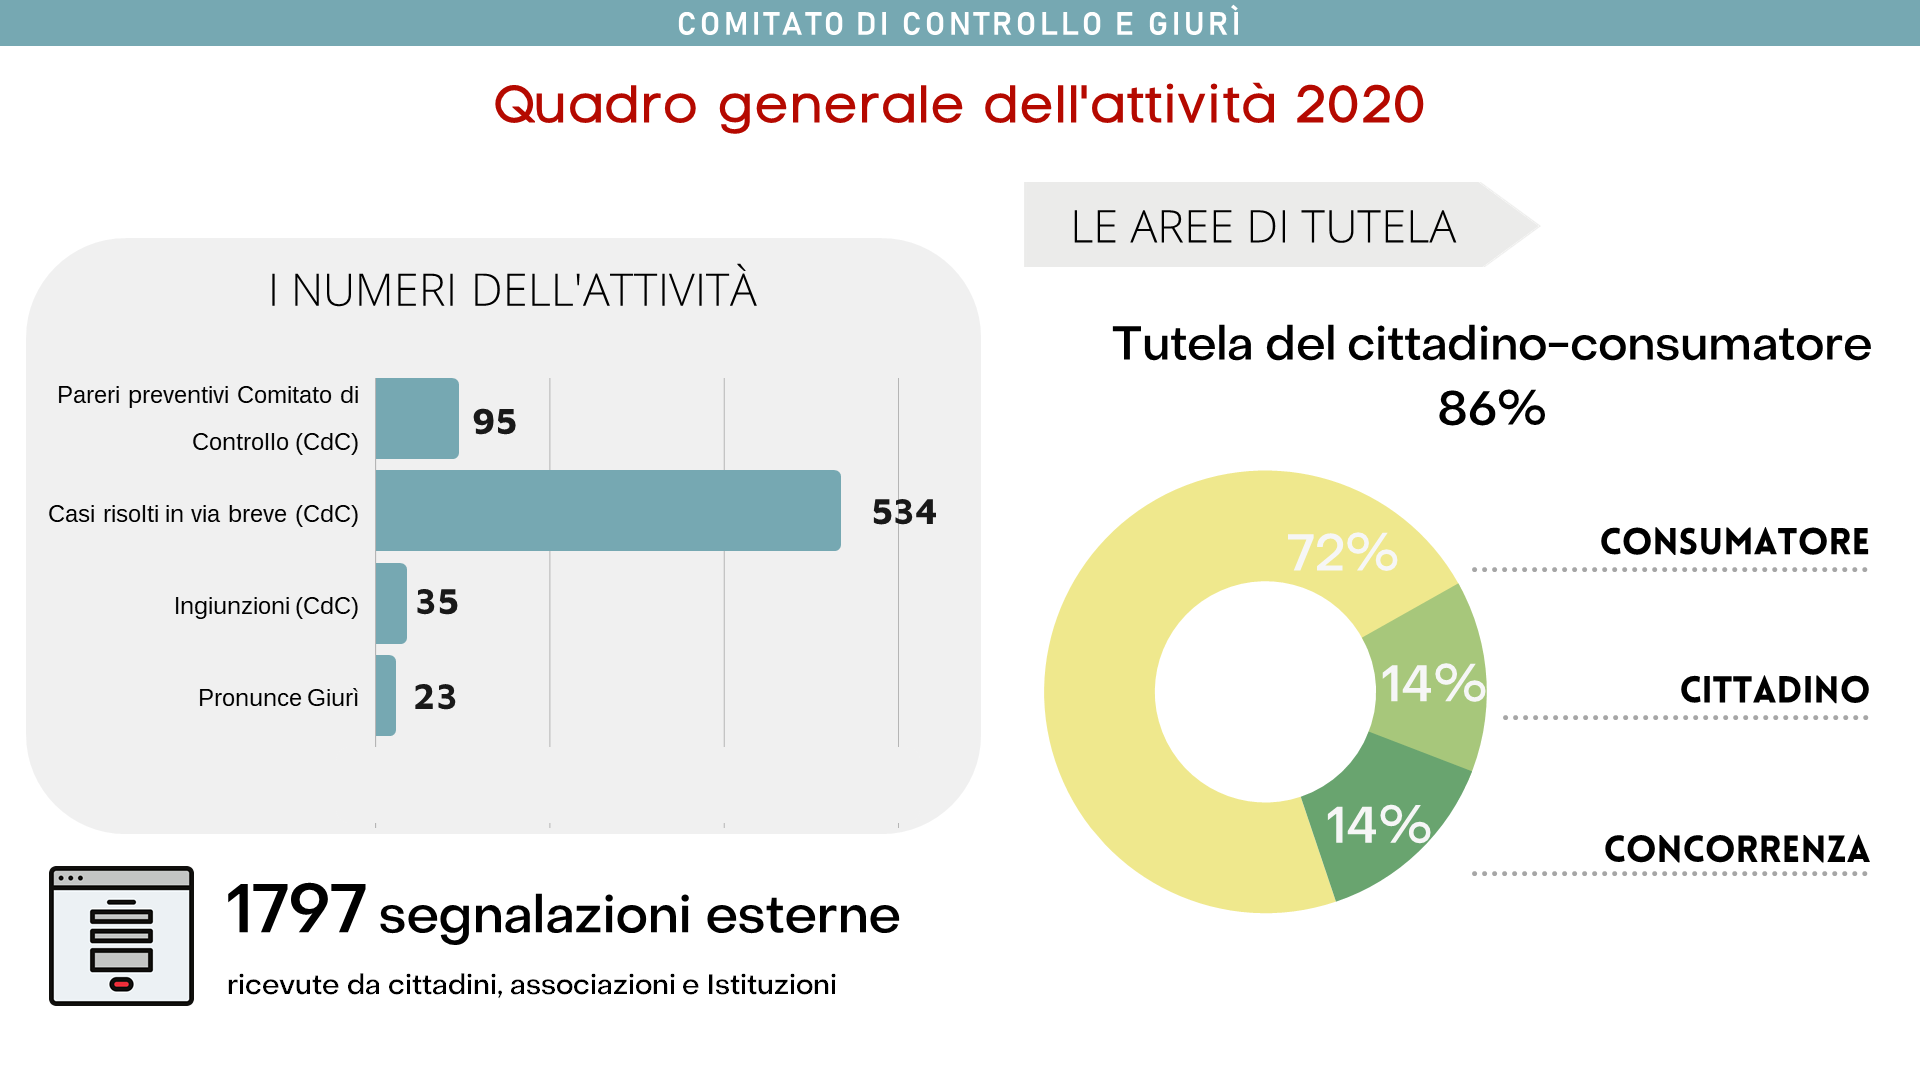 Dati dell'attività 2020, quadro generale. Tutela del cittadino-consumatore 86%.